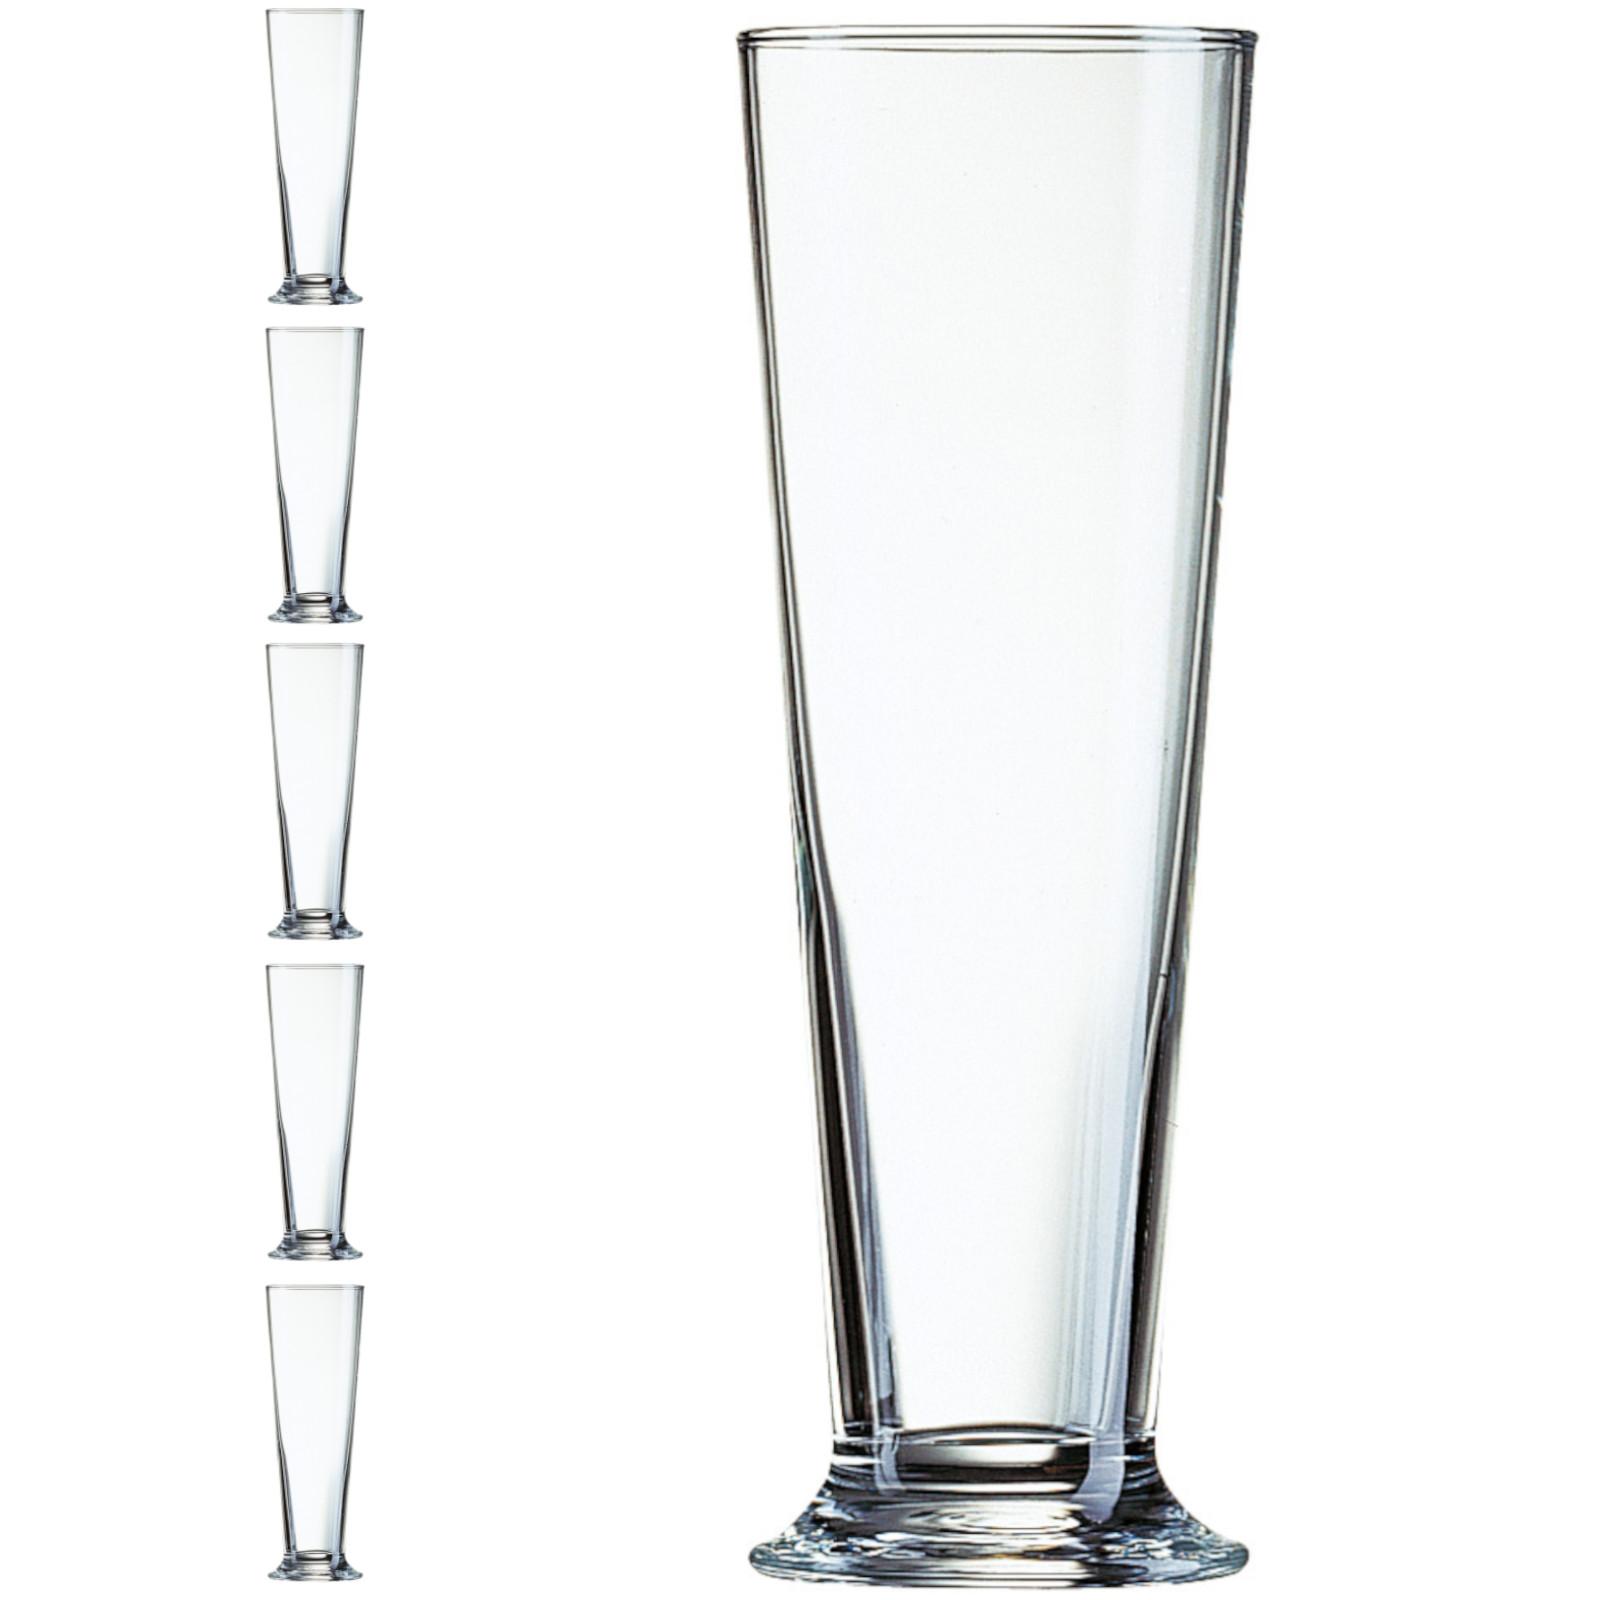 Linz glass, 390ml